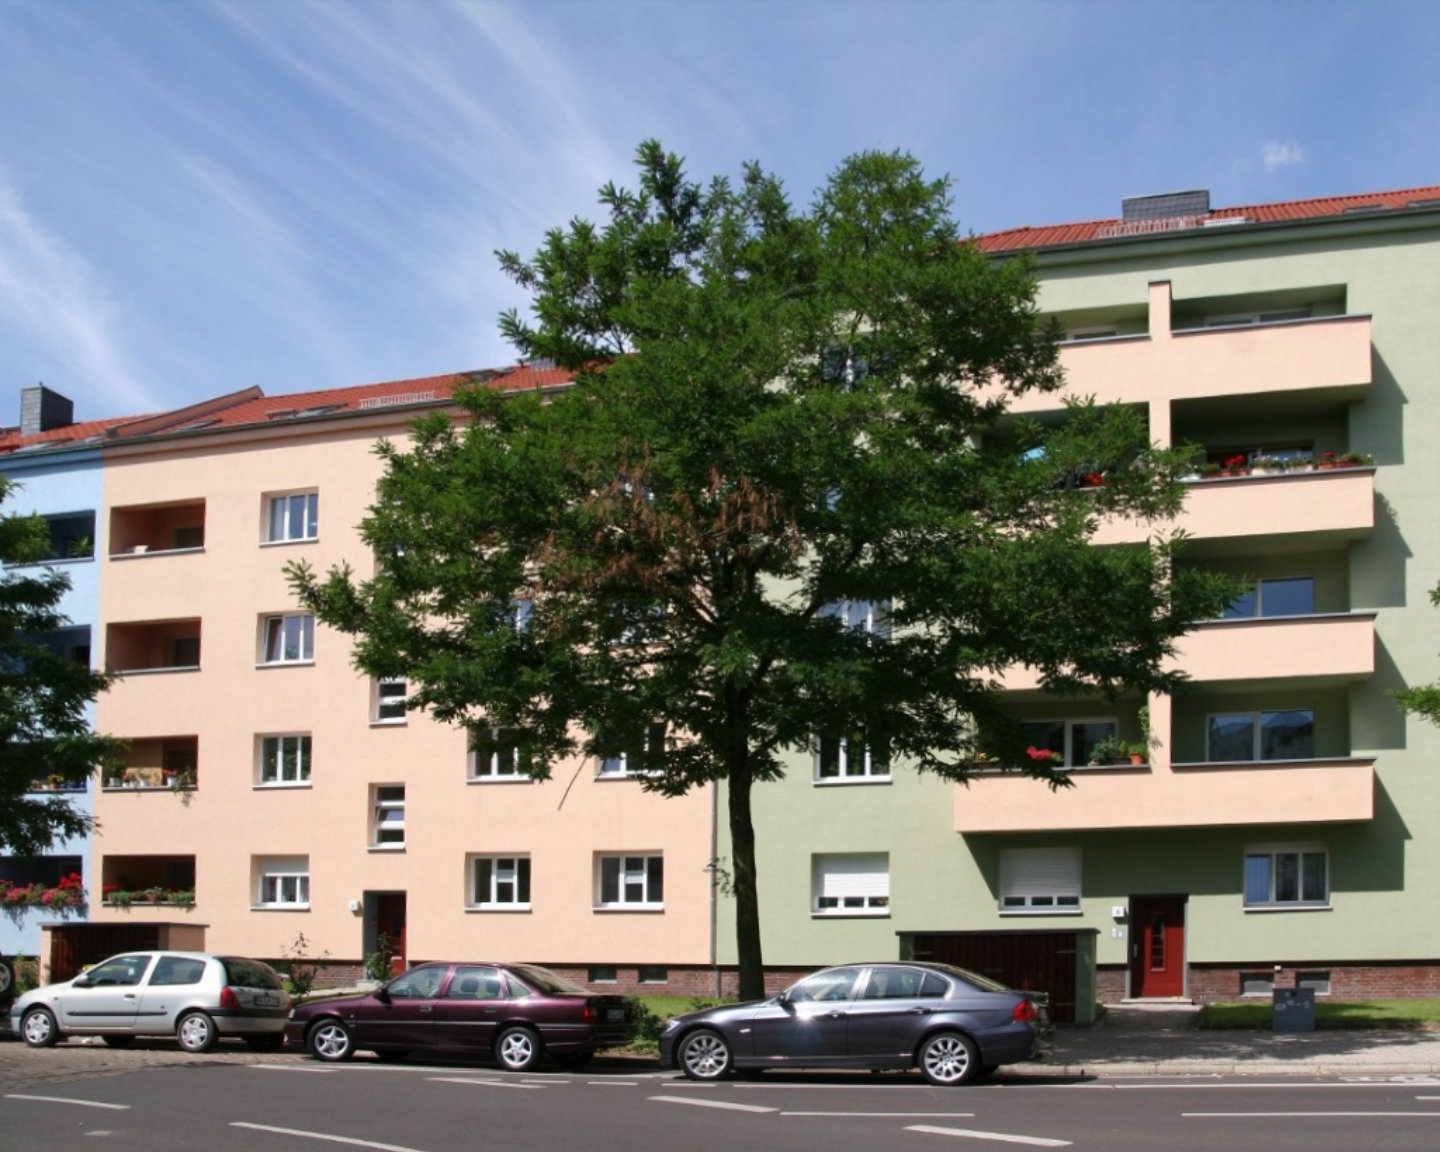 Altbau- bzw. Kernsanierung von einem Mehrfamilienhaus in Sachsen-Anhalt